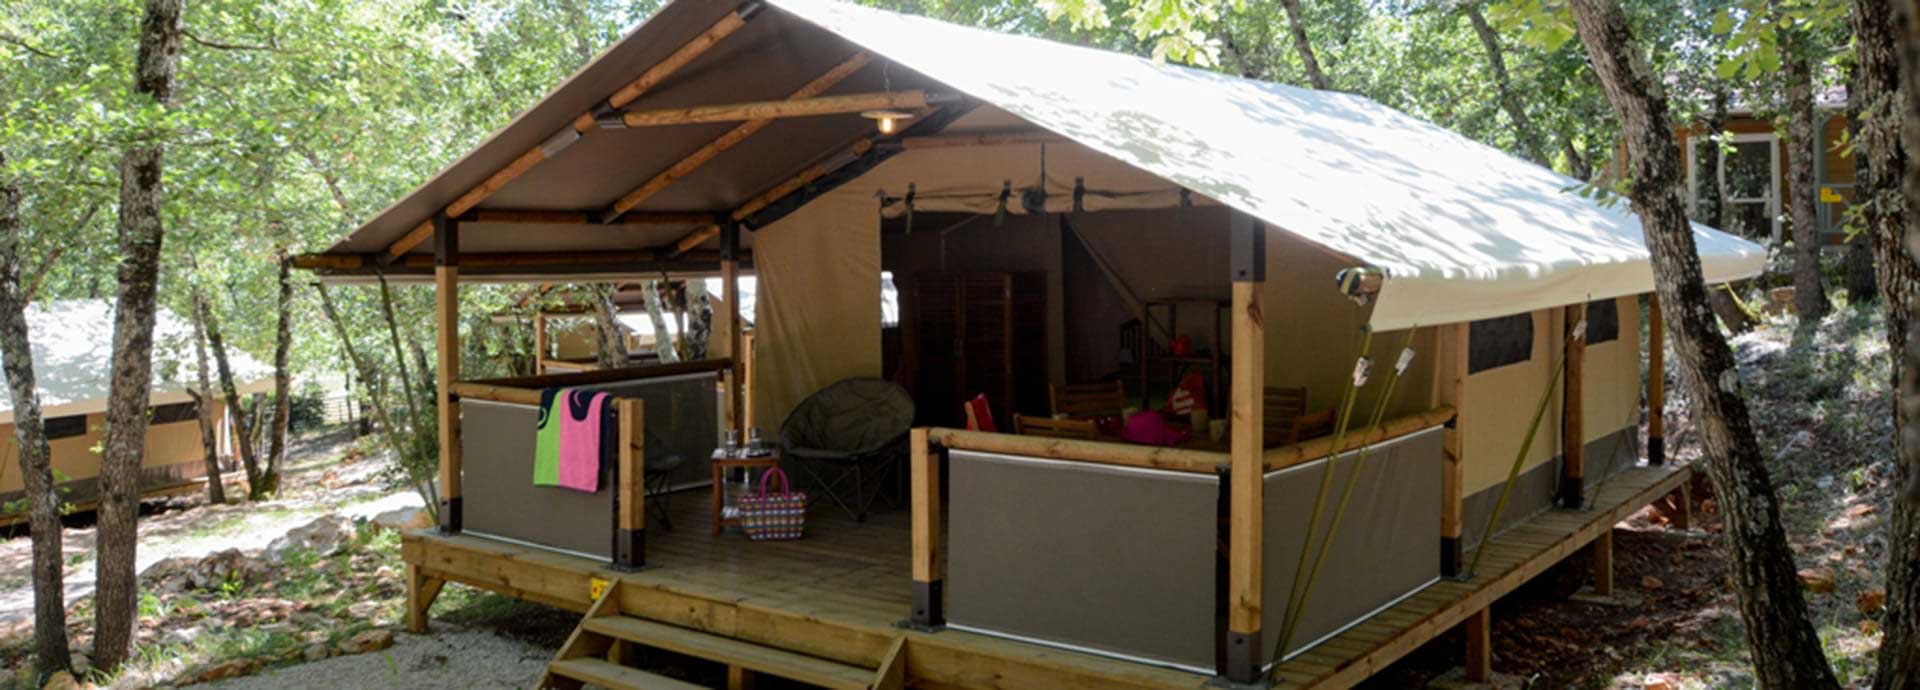 Safari Lodge voor 5 personen met terras op camping Le Parc in de Var.